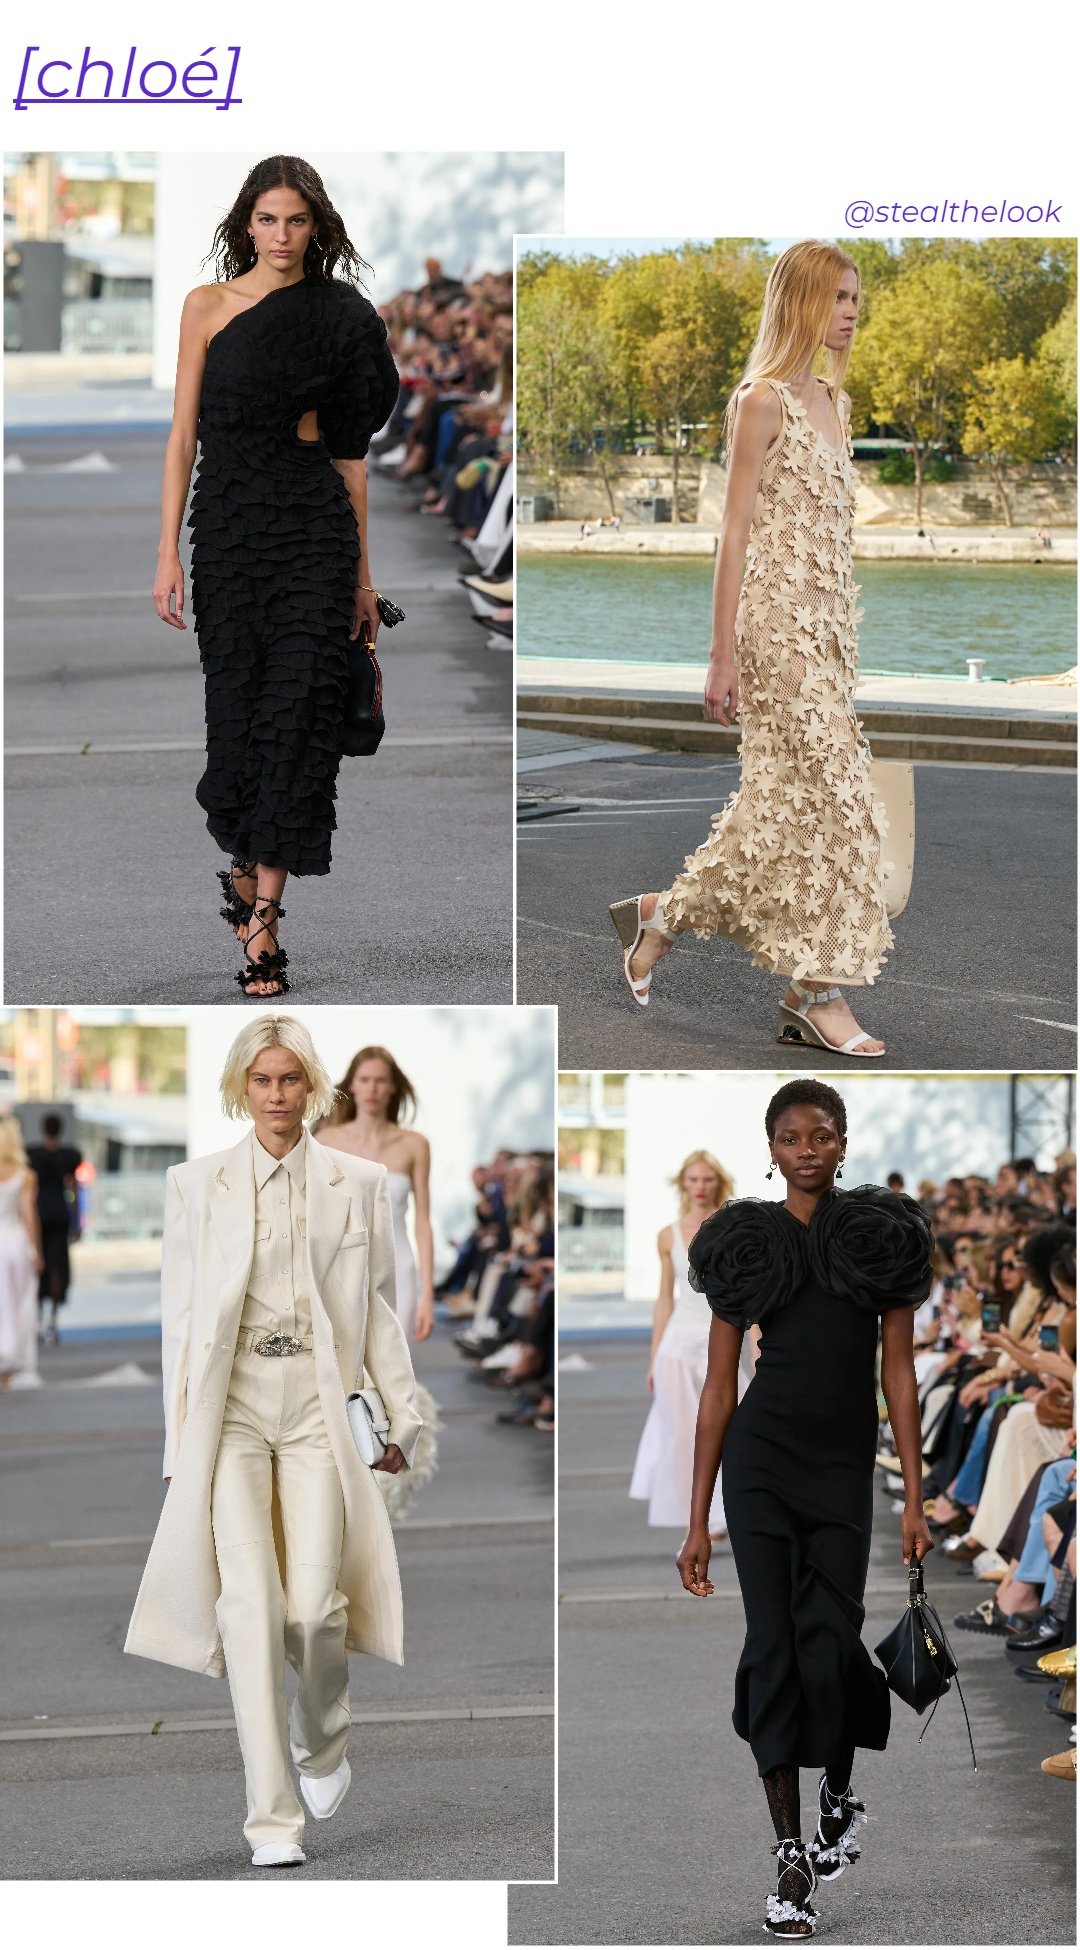 Chloé - roupas diversas - Paris Fashion Week - verão - colagem de imagens - https://stealthelook.com.br